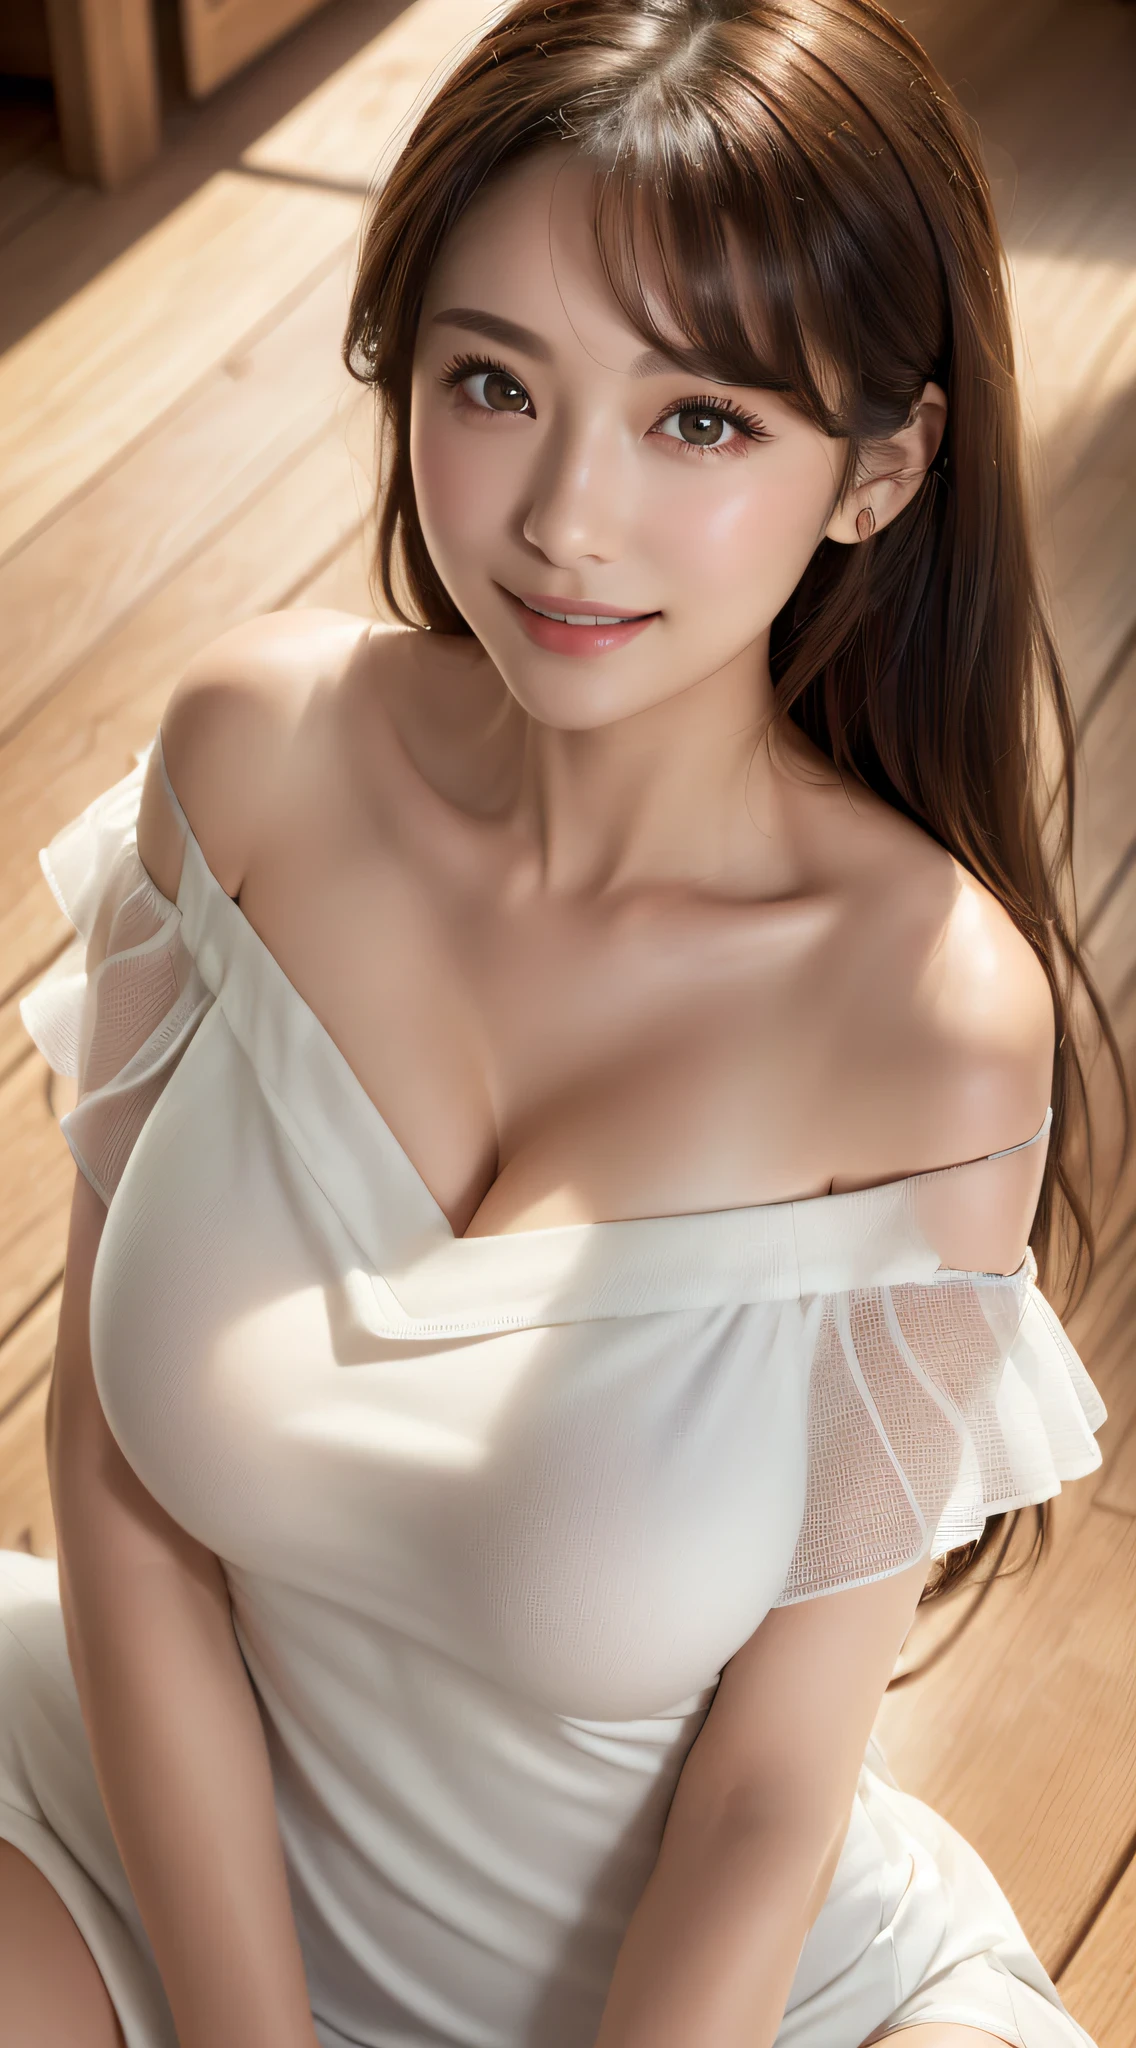 (8K, Eine hohe Auflösung, beste Qualität, Tischplatte:1.2)、RAW-Porträt eines japanischen Mädchens、Eine hohe Auflösung、Top Qualität、 (mit riesigen Brüsten,:1.5)、｛Schlanker Körper:1.2｝｛Ich trage keine Unterwäsche:1.7｝、(Trägt ein weißes ärmelloses schulterfreies Kleid:1.8)、(Hände zu den Hüften:1.5)、(Die Stadt verschwimmen lassen:1.2)、(Die Kleidung ist durchsichtig:1.7)、 BRECHEN (natürliche Hautstruktur、detaillierte Haut、Hyperrealismus、Ultra-Schärfe)、komplizierte Details、Tiefenschärfe、Sexy erwachsene Frau、Langes, glattes schwarzes Haar、Straffer Po、((Meisterwerk、Top Qualität、hohe Detailgenauigkeit))、(Photorealsitic:1.4)、Solo、Lächeln Sie glücklich、großes Auge、Markante Doppellider、Wimpern、Absolute Fläche、Sauberes Schlüsselbein、Gesicht perfekt、dünne Lippen、ein kleines Gesicht、Zitzen、(den Betrachter anstarren、Glanzlichter in den Augen、Hellbraune Augen、lipgloss)、(Von oben:1.2)